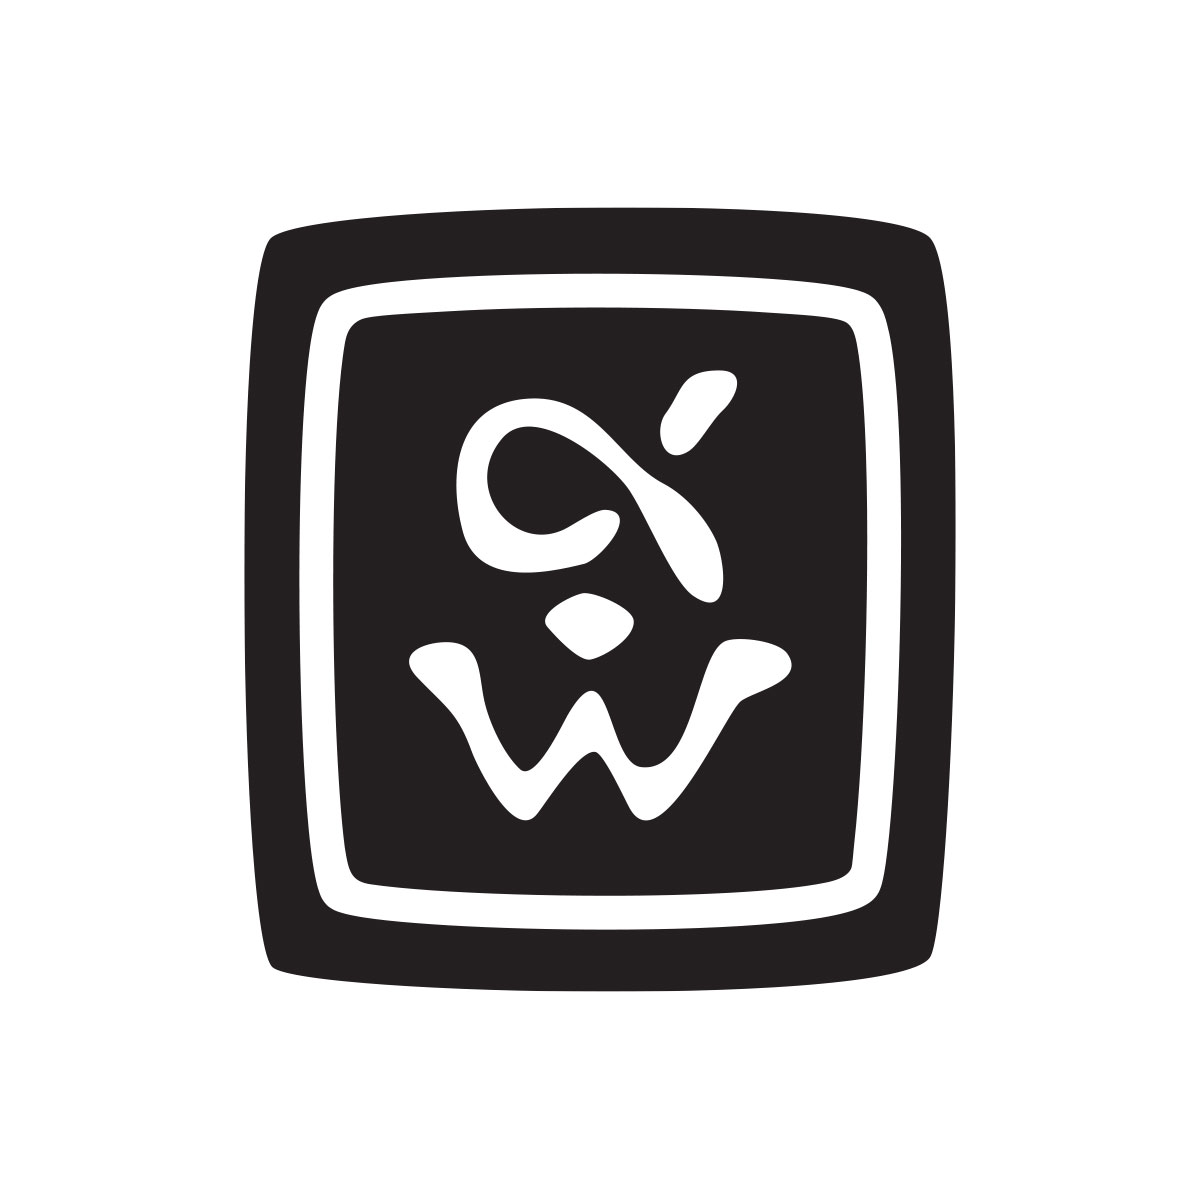 The Alpha Workshops Logo